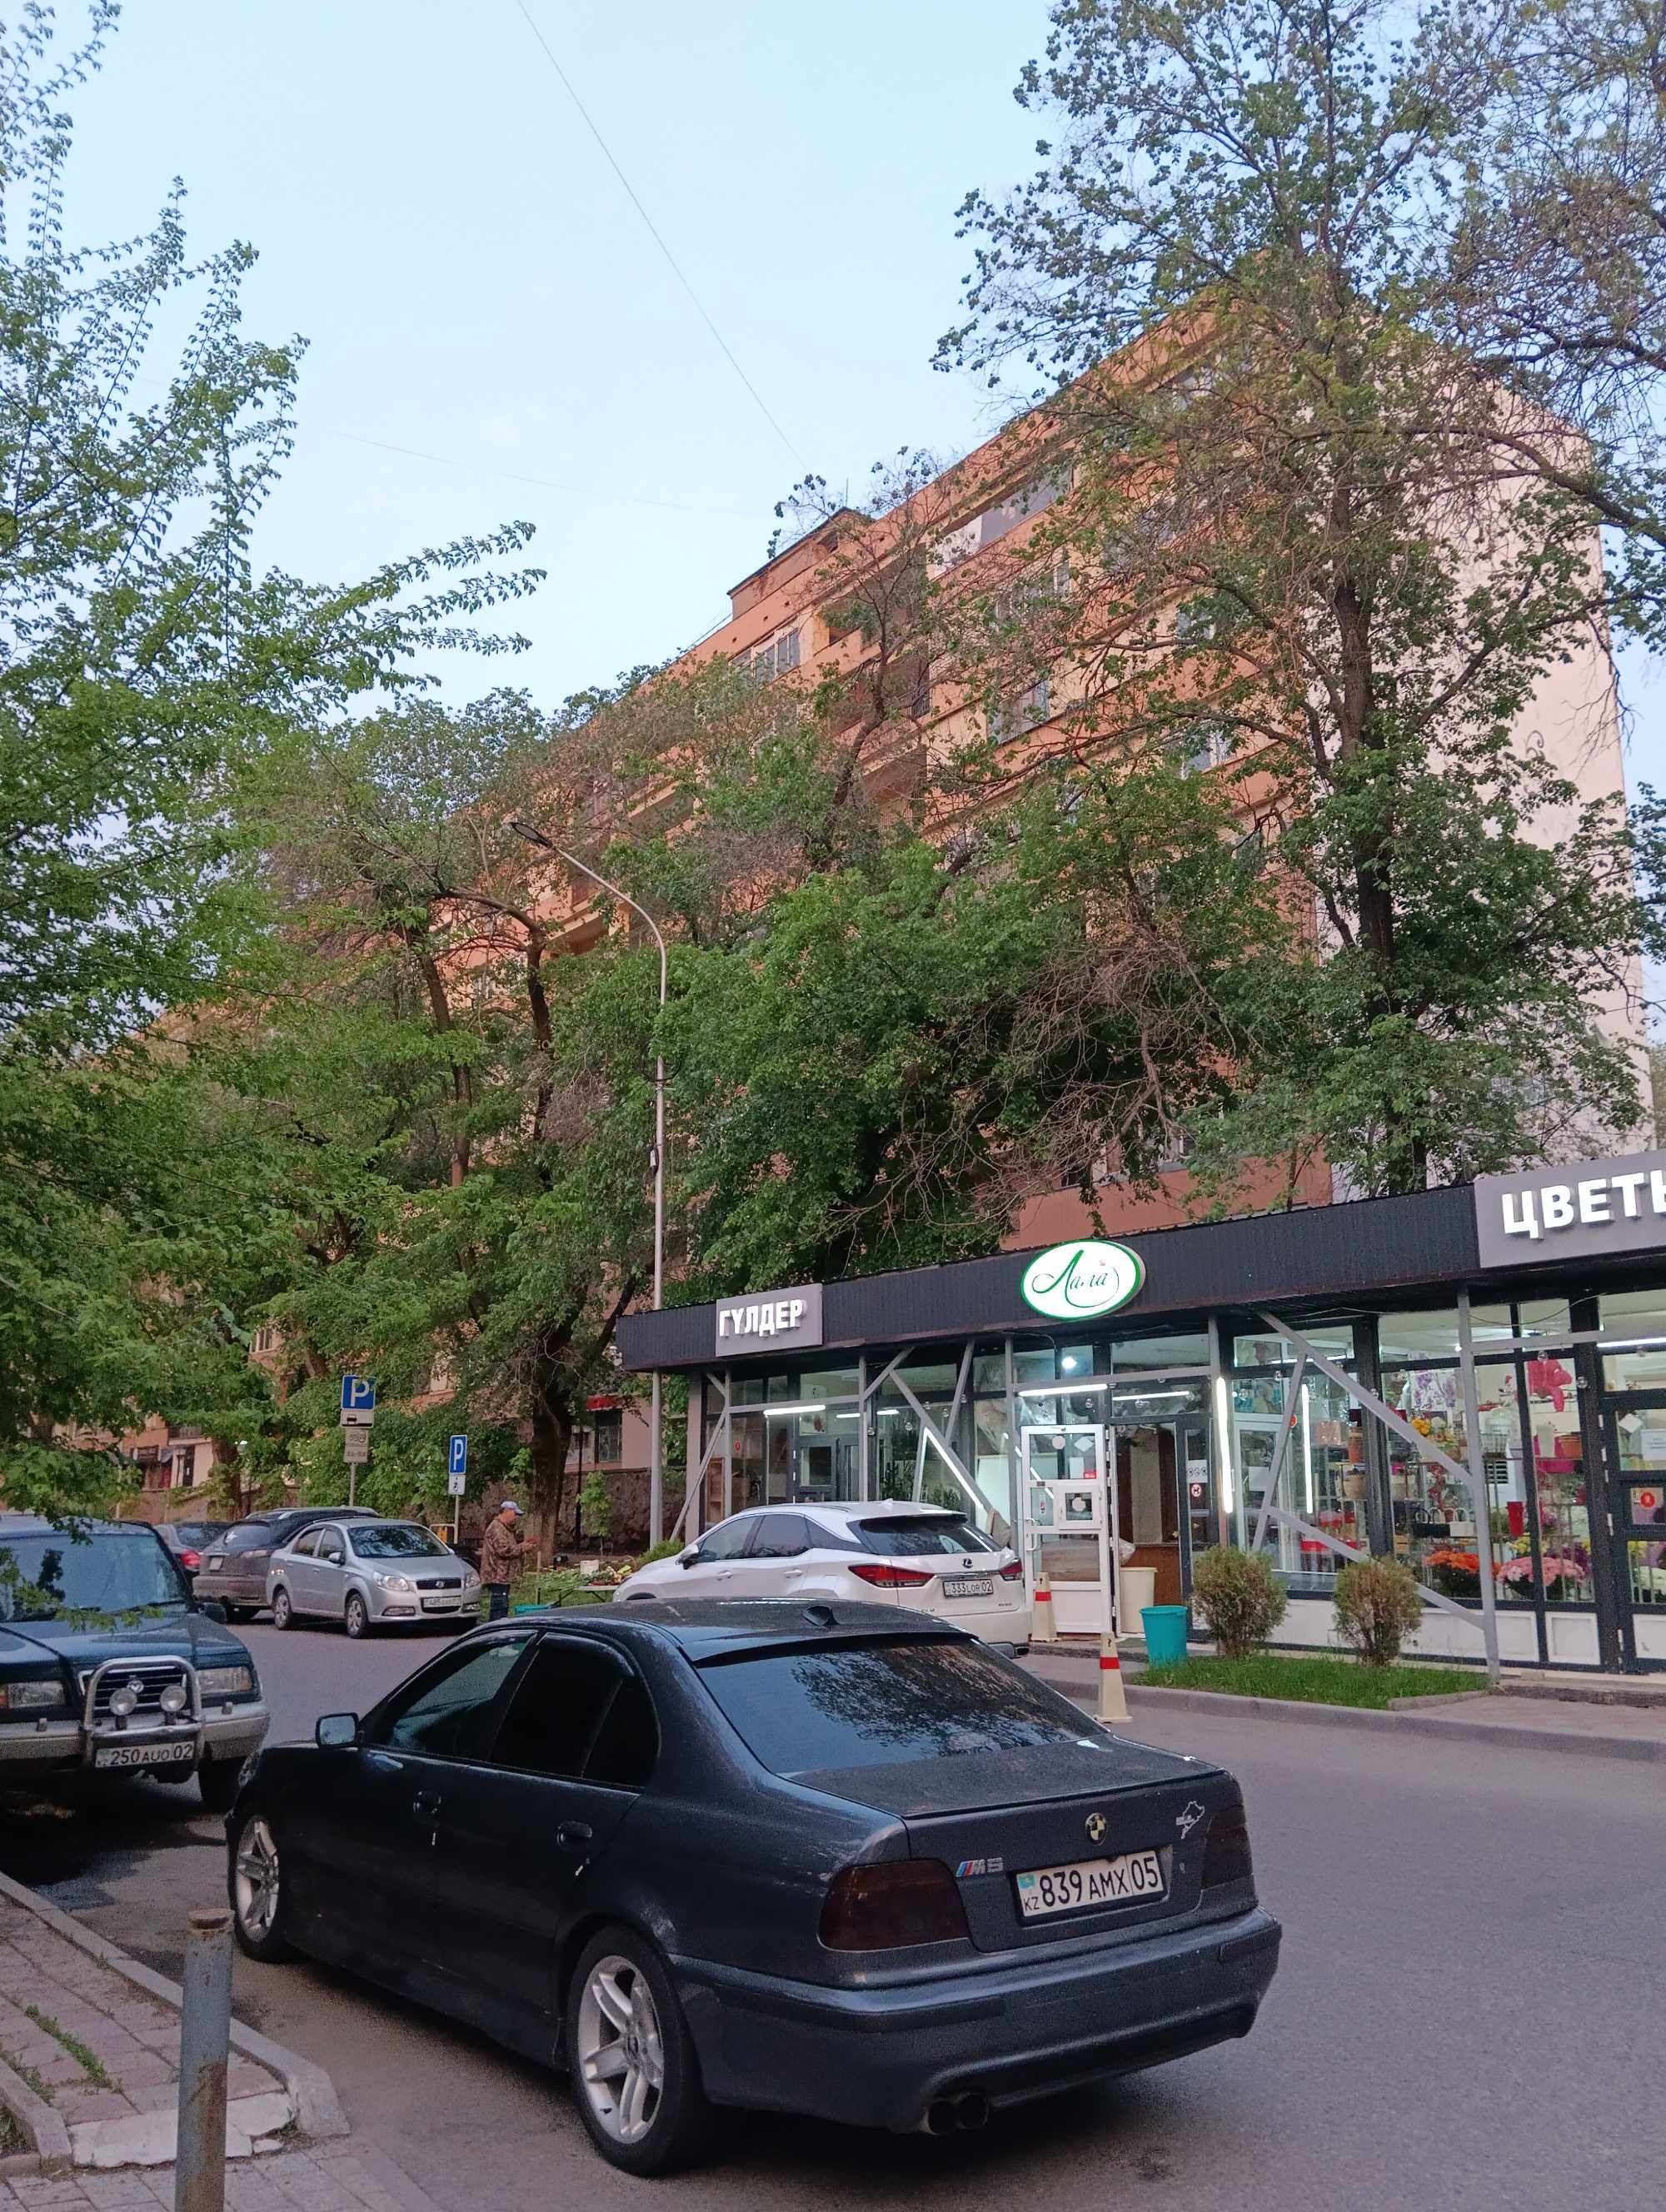 3-комнатная квартира в самом центре Алматы